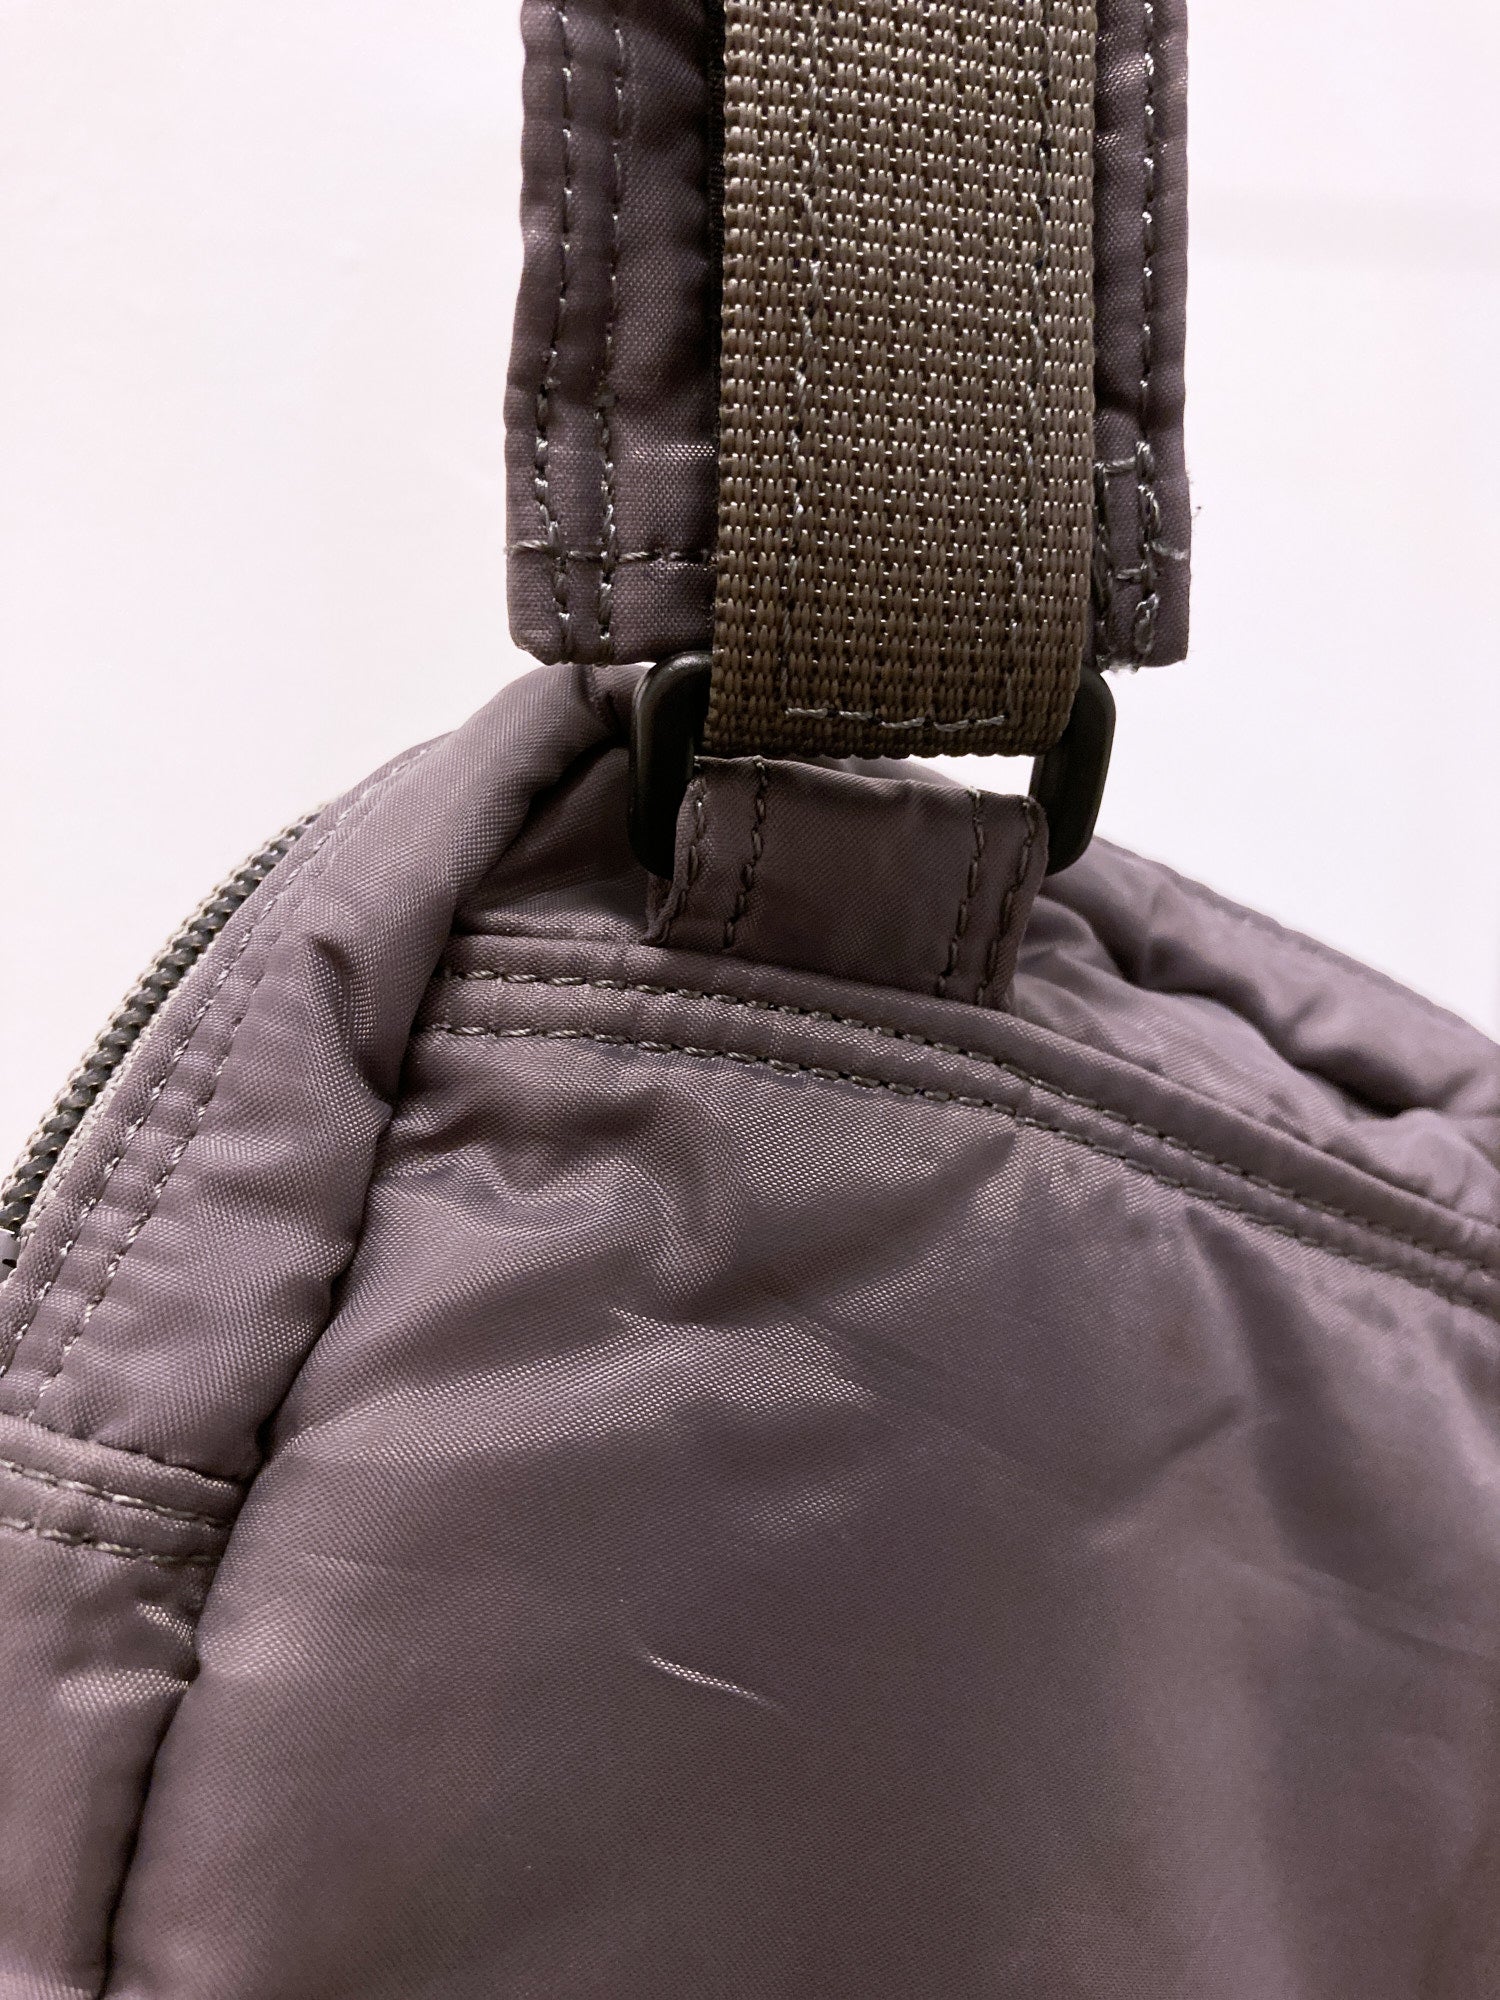 Masaki Matsushima Homme khaki-ish grey nylon cross-body bag